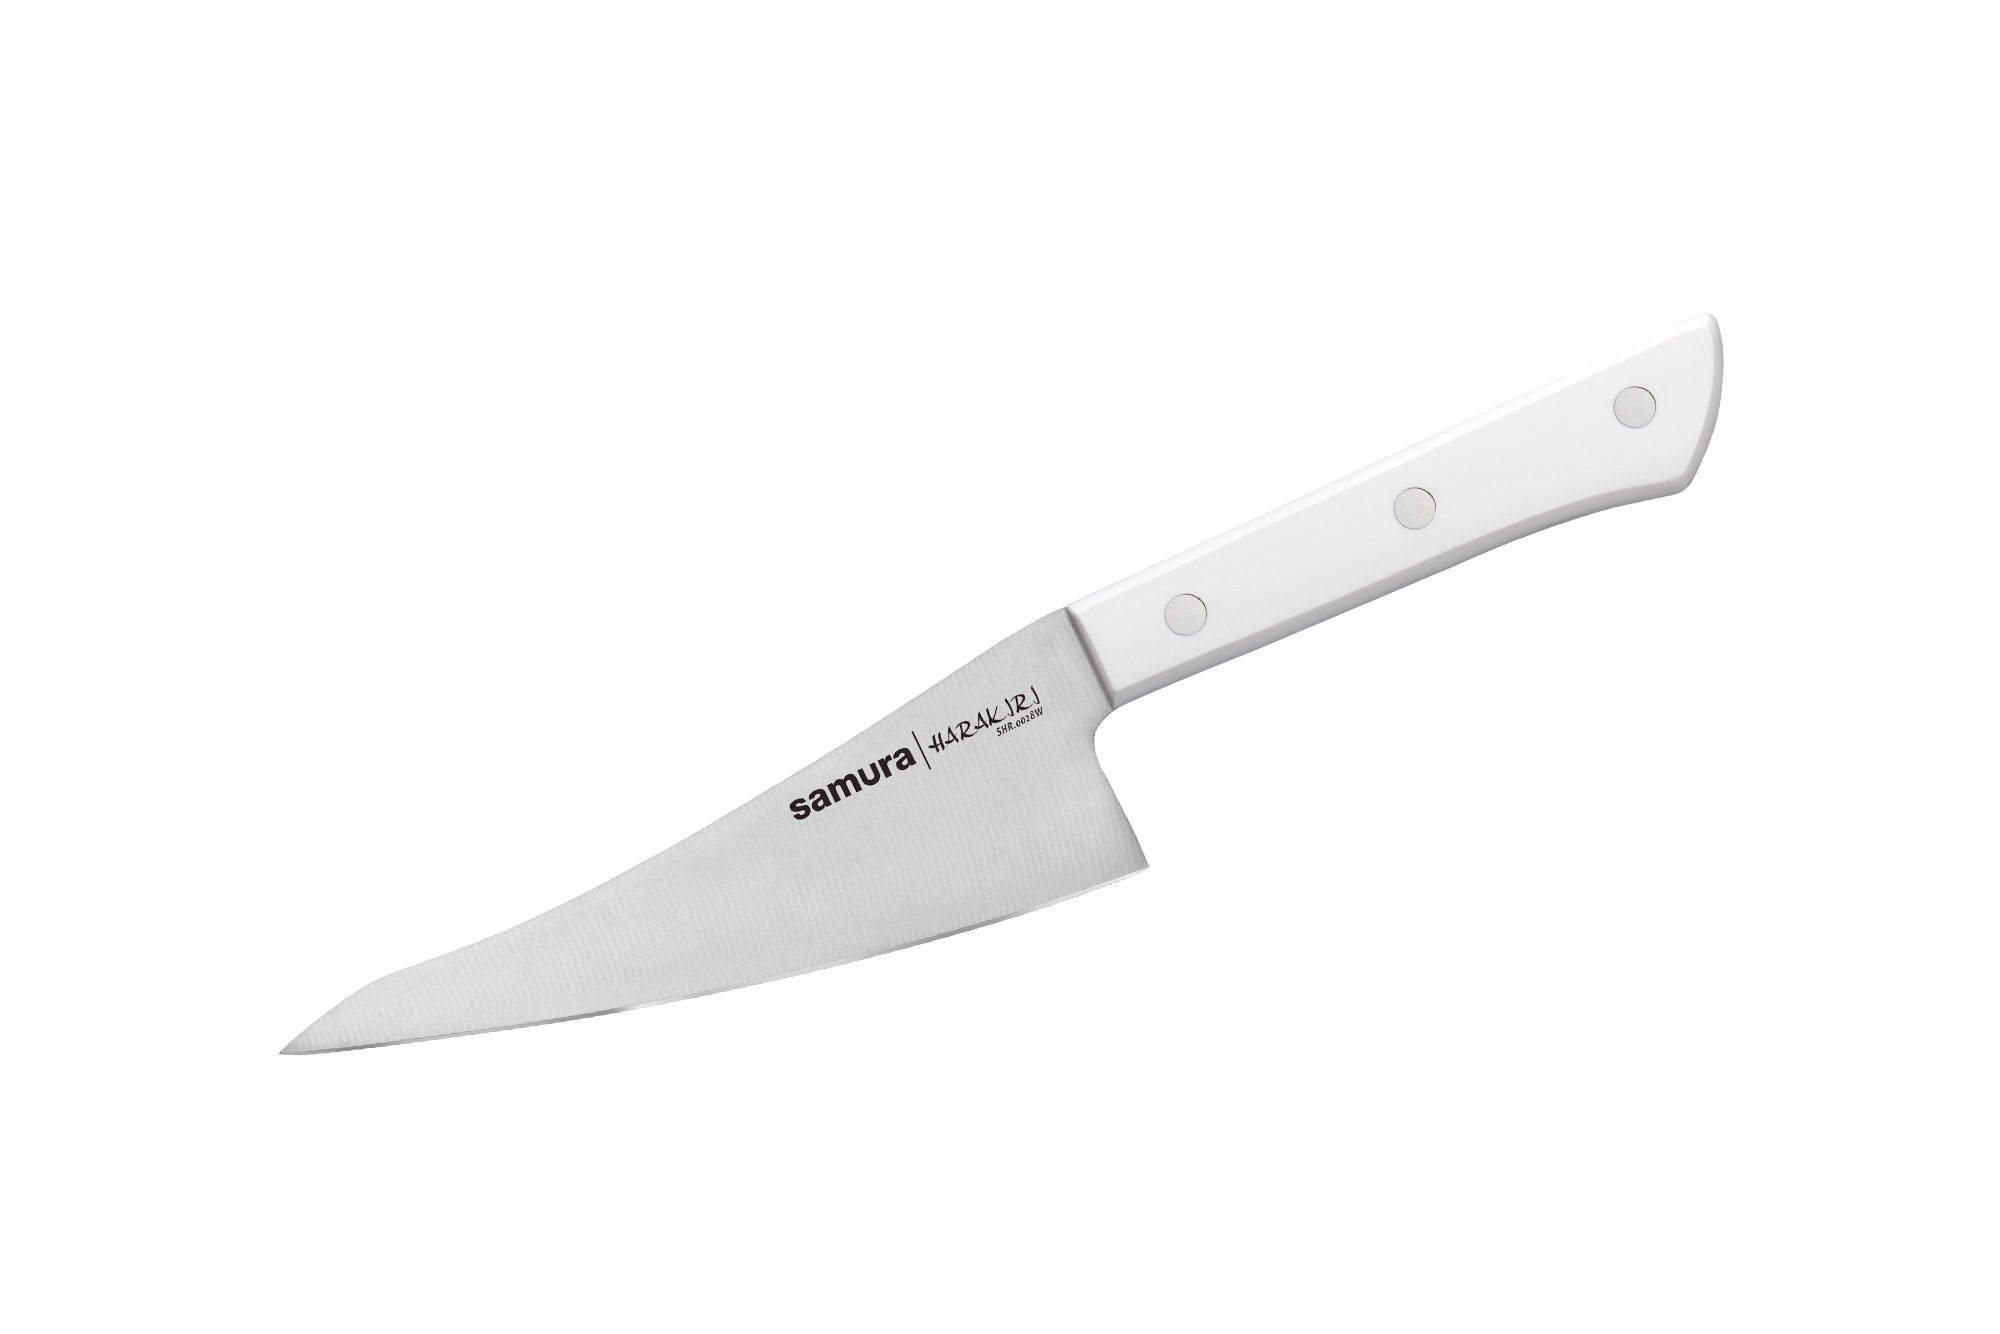 Кухонный нож универсальный Samura Harakiri 146 мм, сталь AUS-8, рукоять пластик, белый нож кухонный samura harakiri гранд шеф 240 мм коррозие стойкая сталь abs пластик